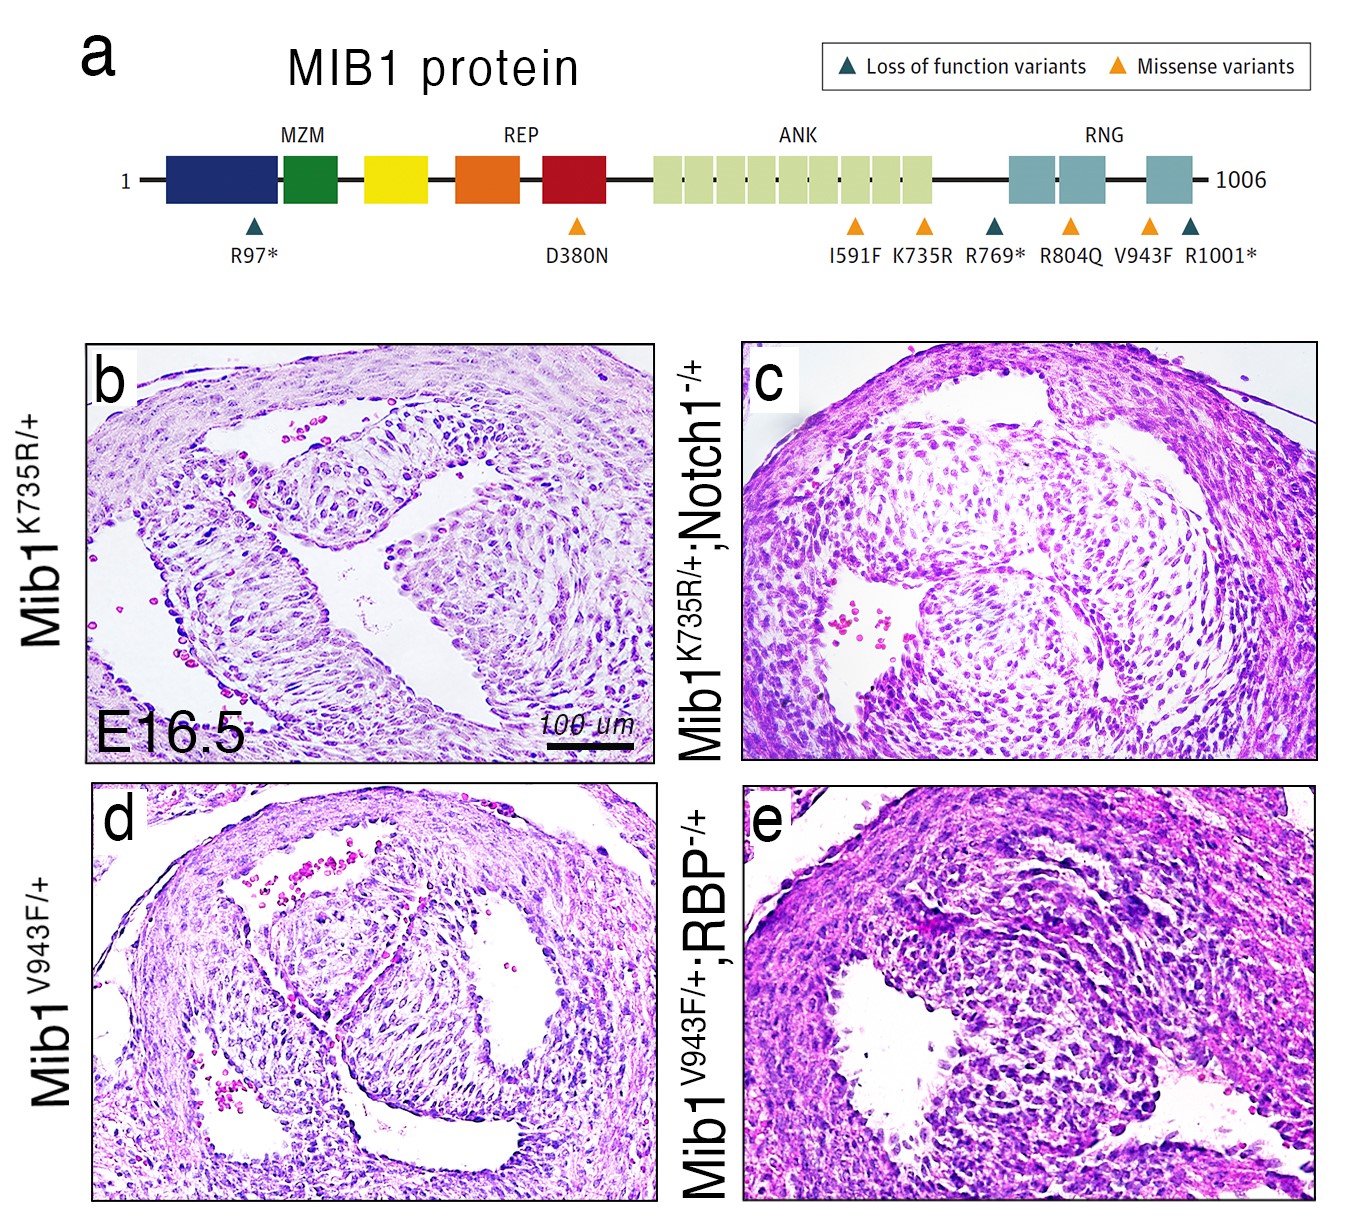 Mutaciones en MIB1 asociadas a la presencia de BAV,  cuyo modelado en ratón causa BAV. (a) Esquema de la proteína MIB1 con sus distintos dominios funcionales y las mutaciones identificadas asociadas a BAV familiar y esporádica. La generación mediante edición genética de dos líneas de ratón portadoras de mutaciones que afectan a la función de MIB1 (MIB1K735R y MIB1V943F) causa el desarrollo de una BAV.  